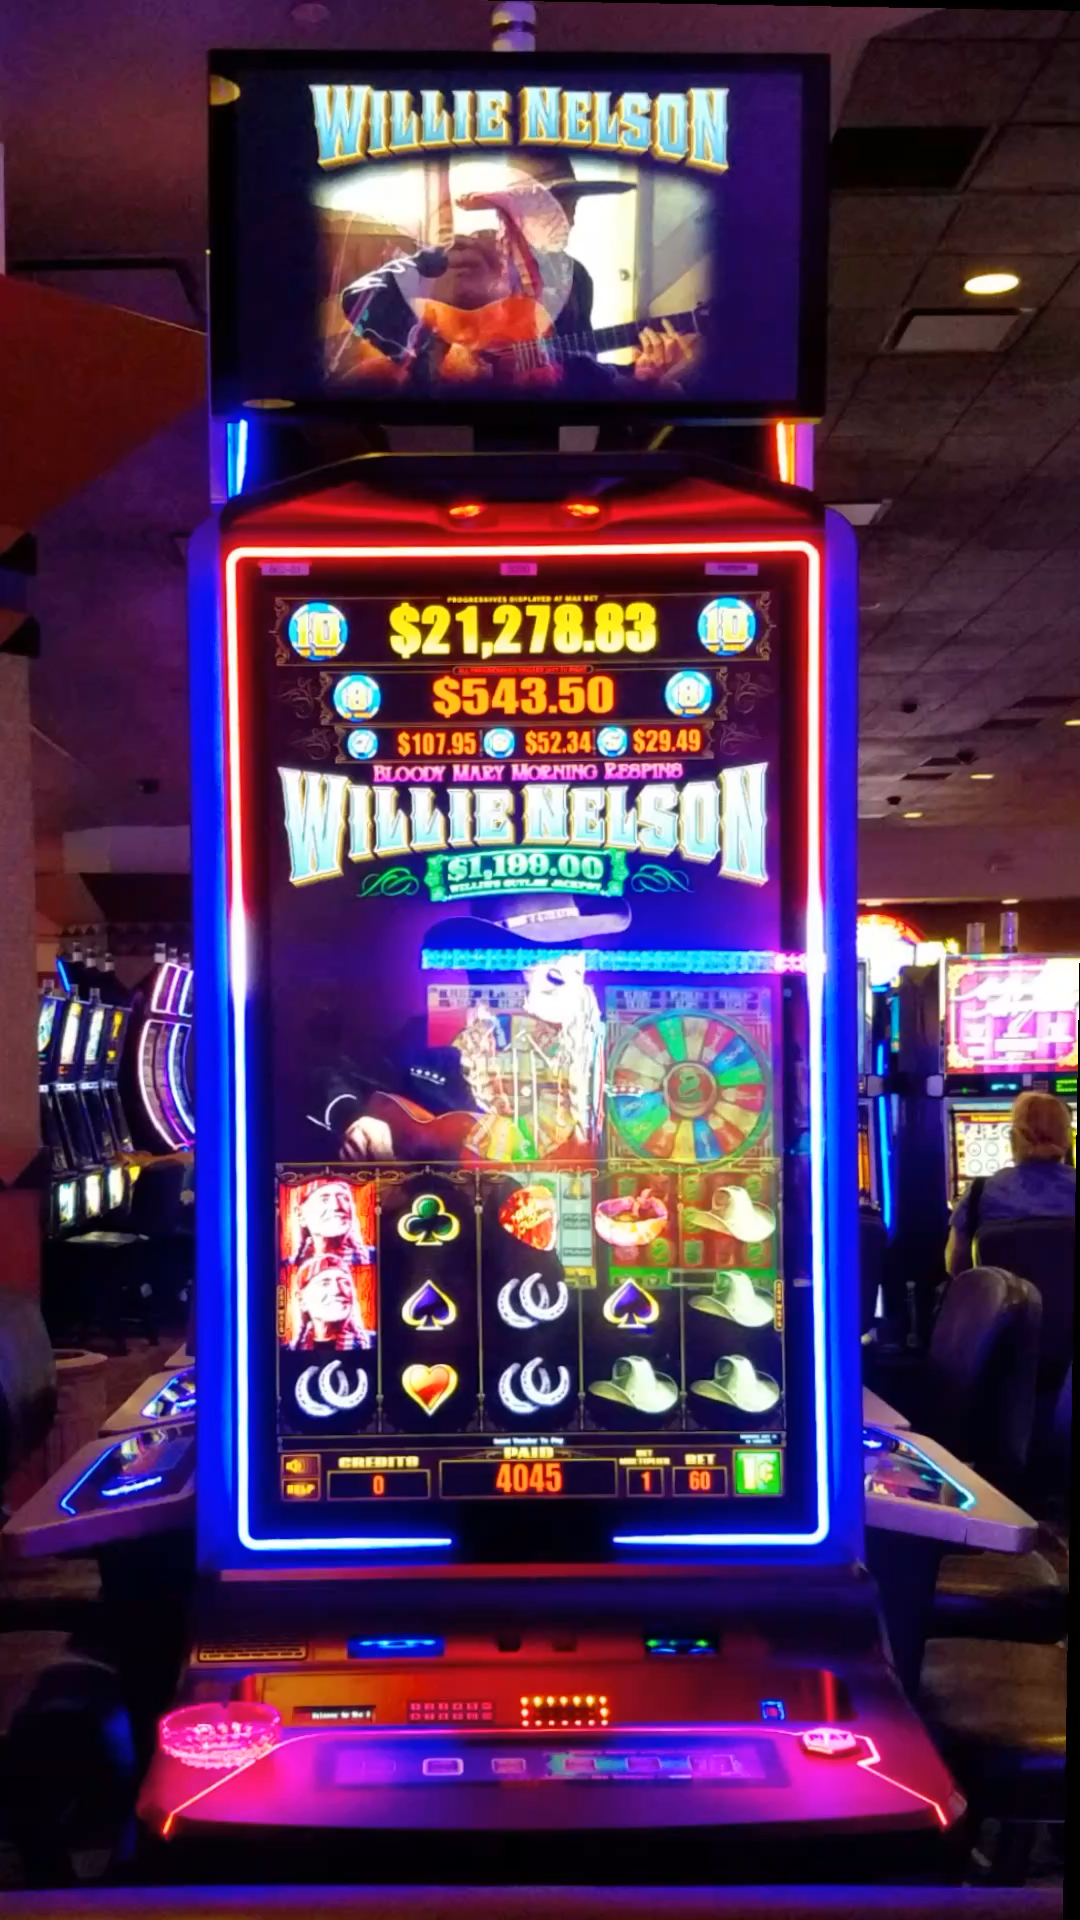 Bonustrading casino 58132